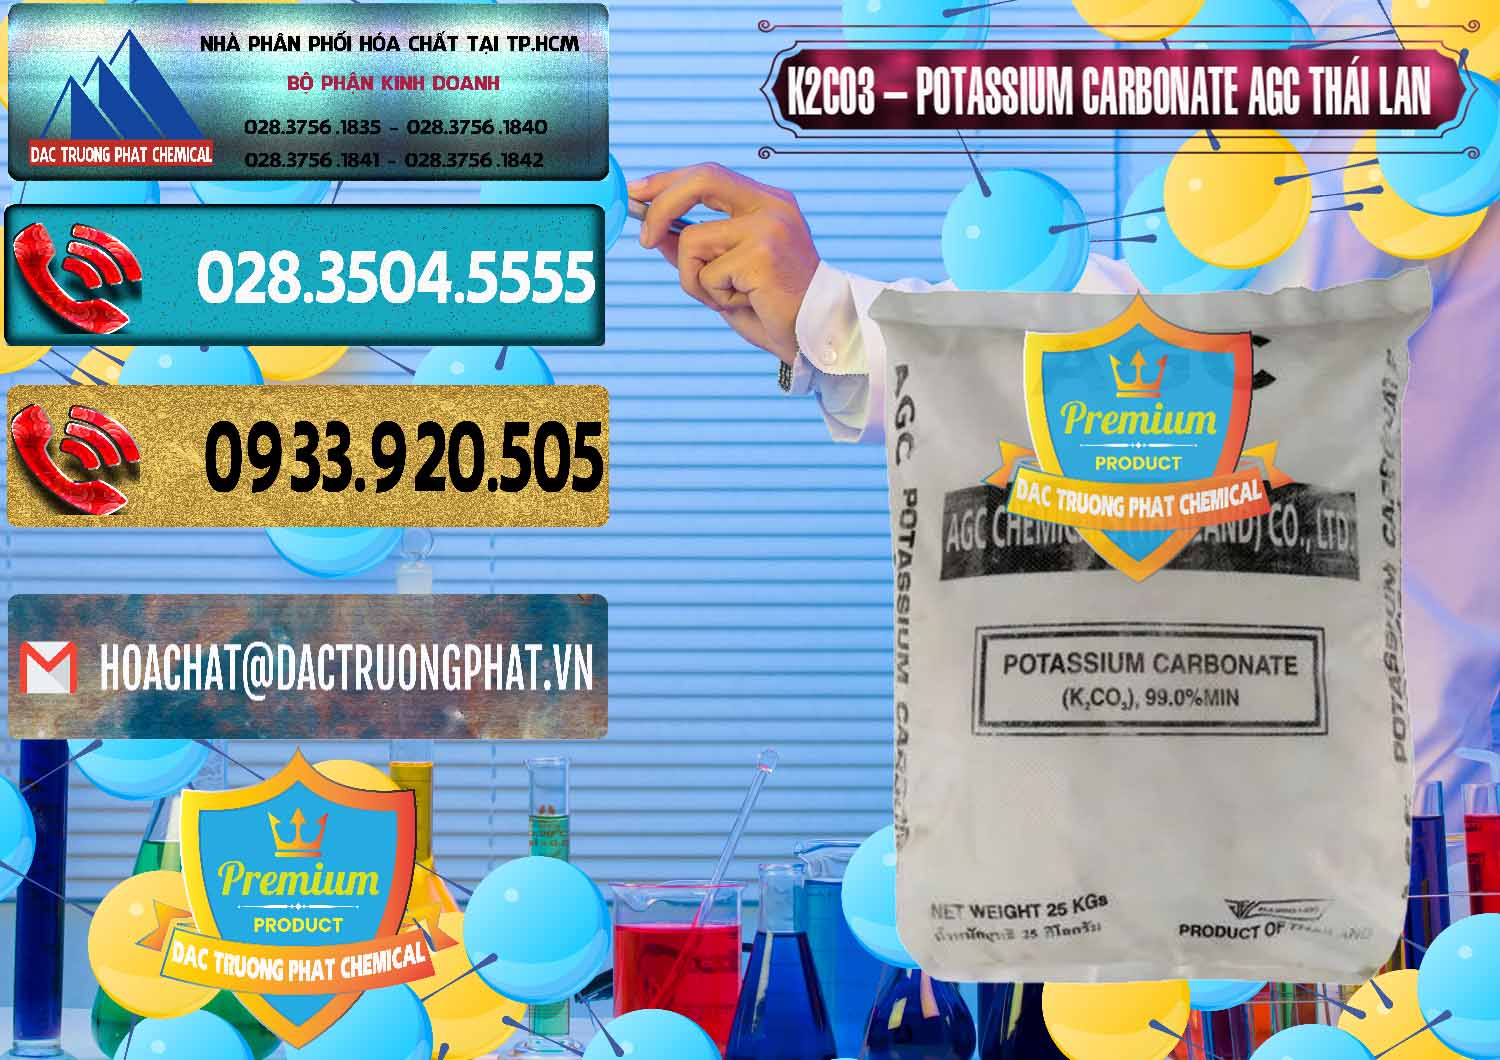 Nơi chuyên bán _ cung ứng K2Co3 – Potassium Carbonate AGC Thái Lan Thailand - 0471 - Cty nhập khẩu ( cung cấp ) hóa chất tại TP.HCM - hoachatdetnhuom.com